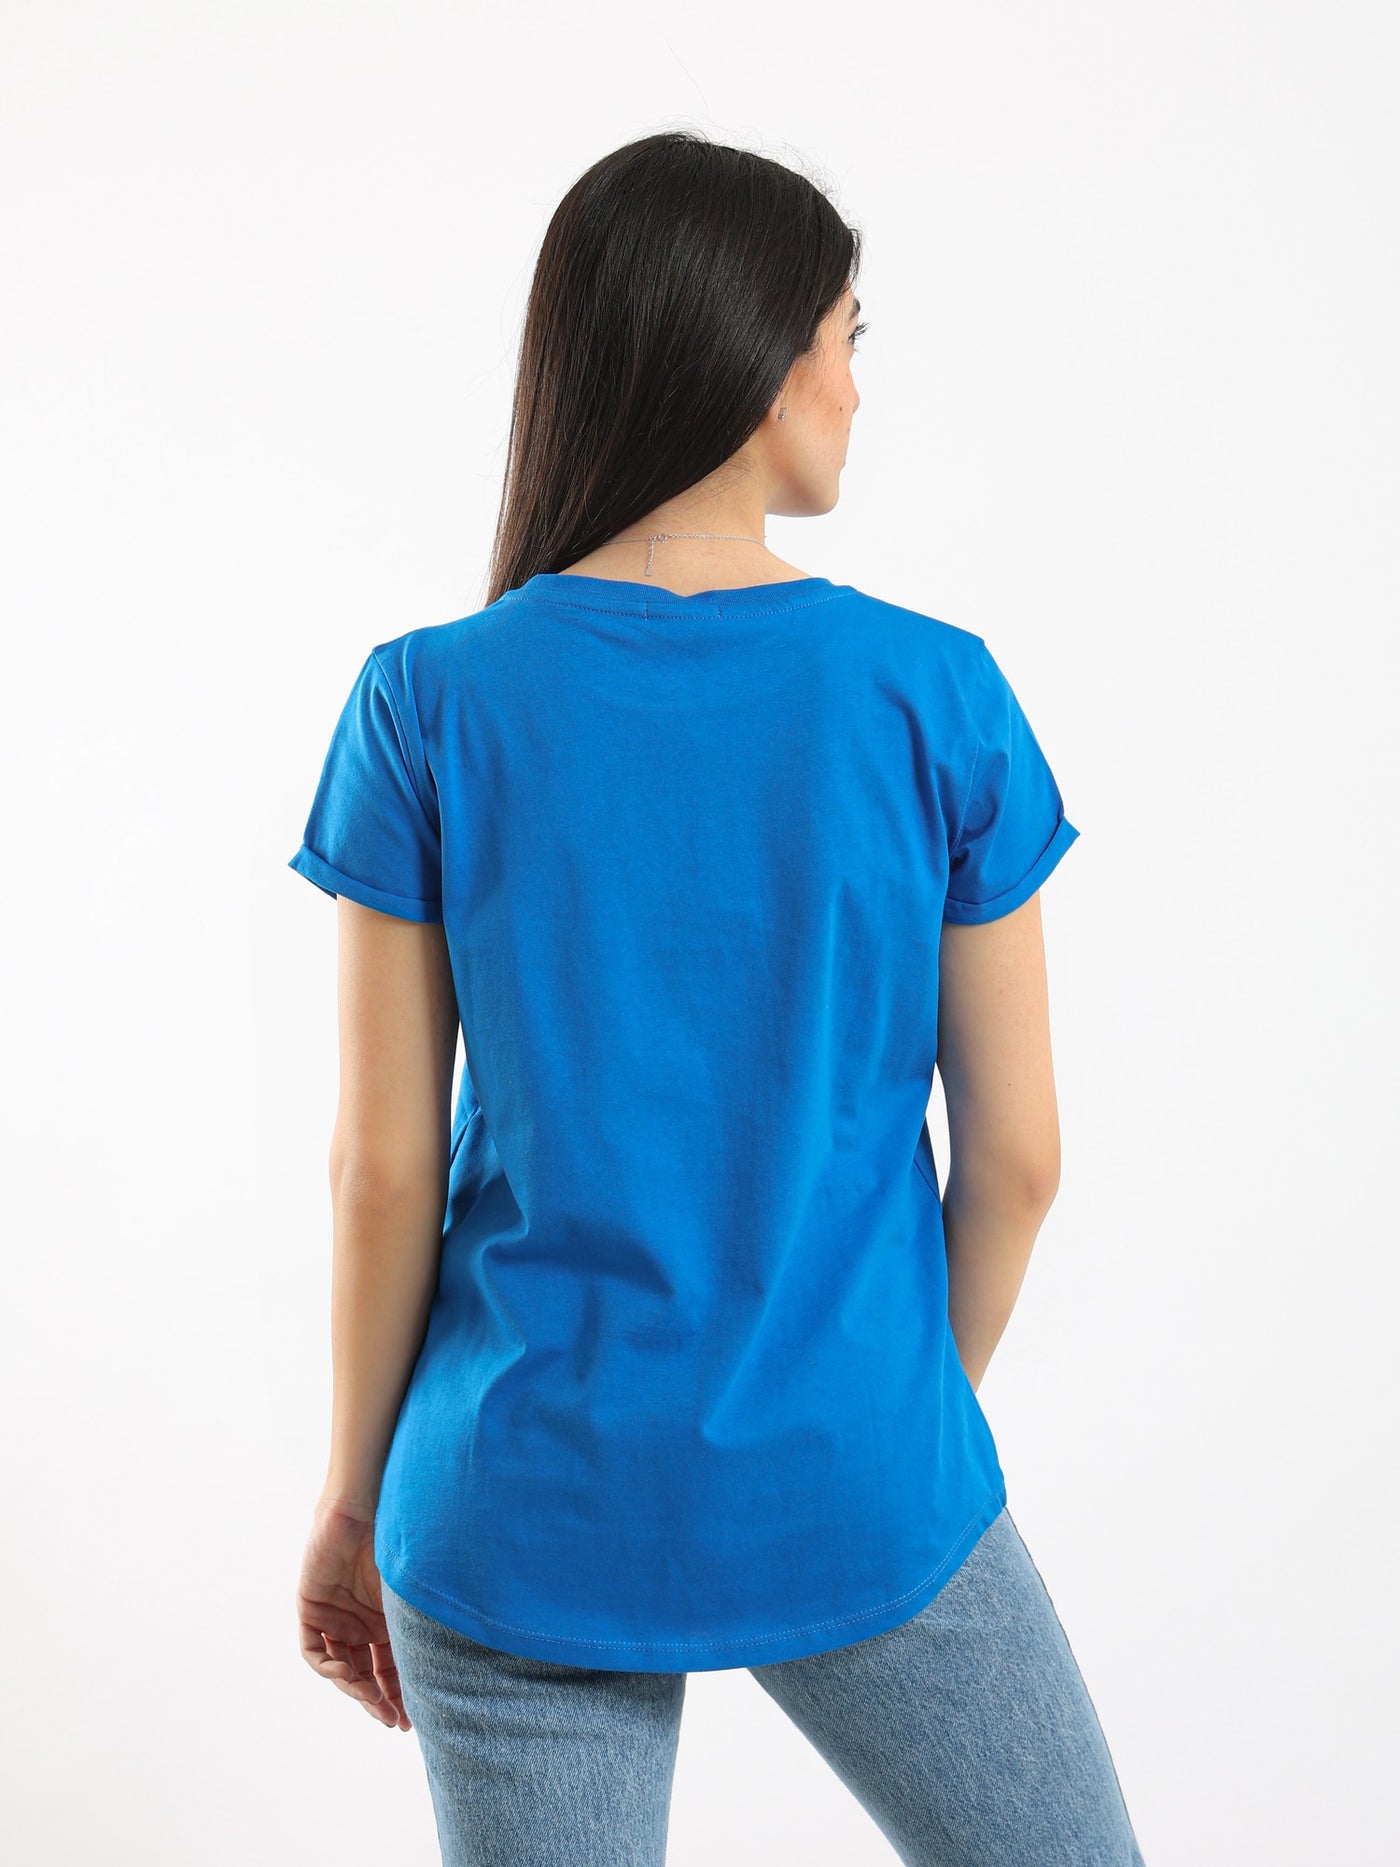 T-Shirt - Printed - Round Neck